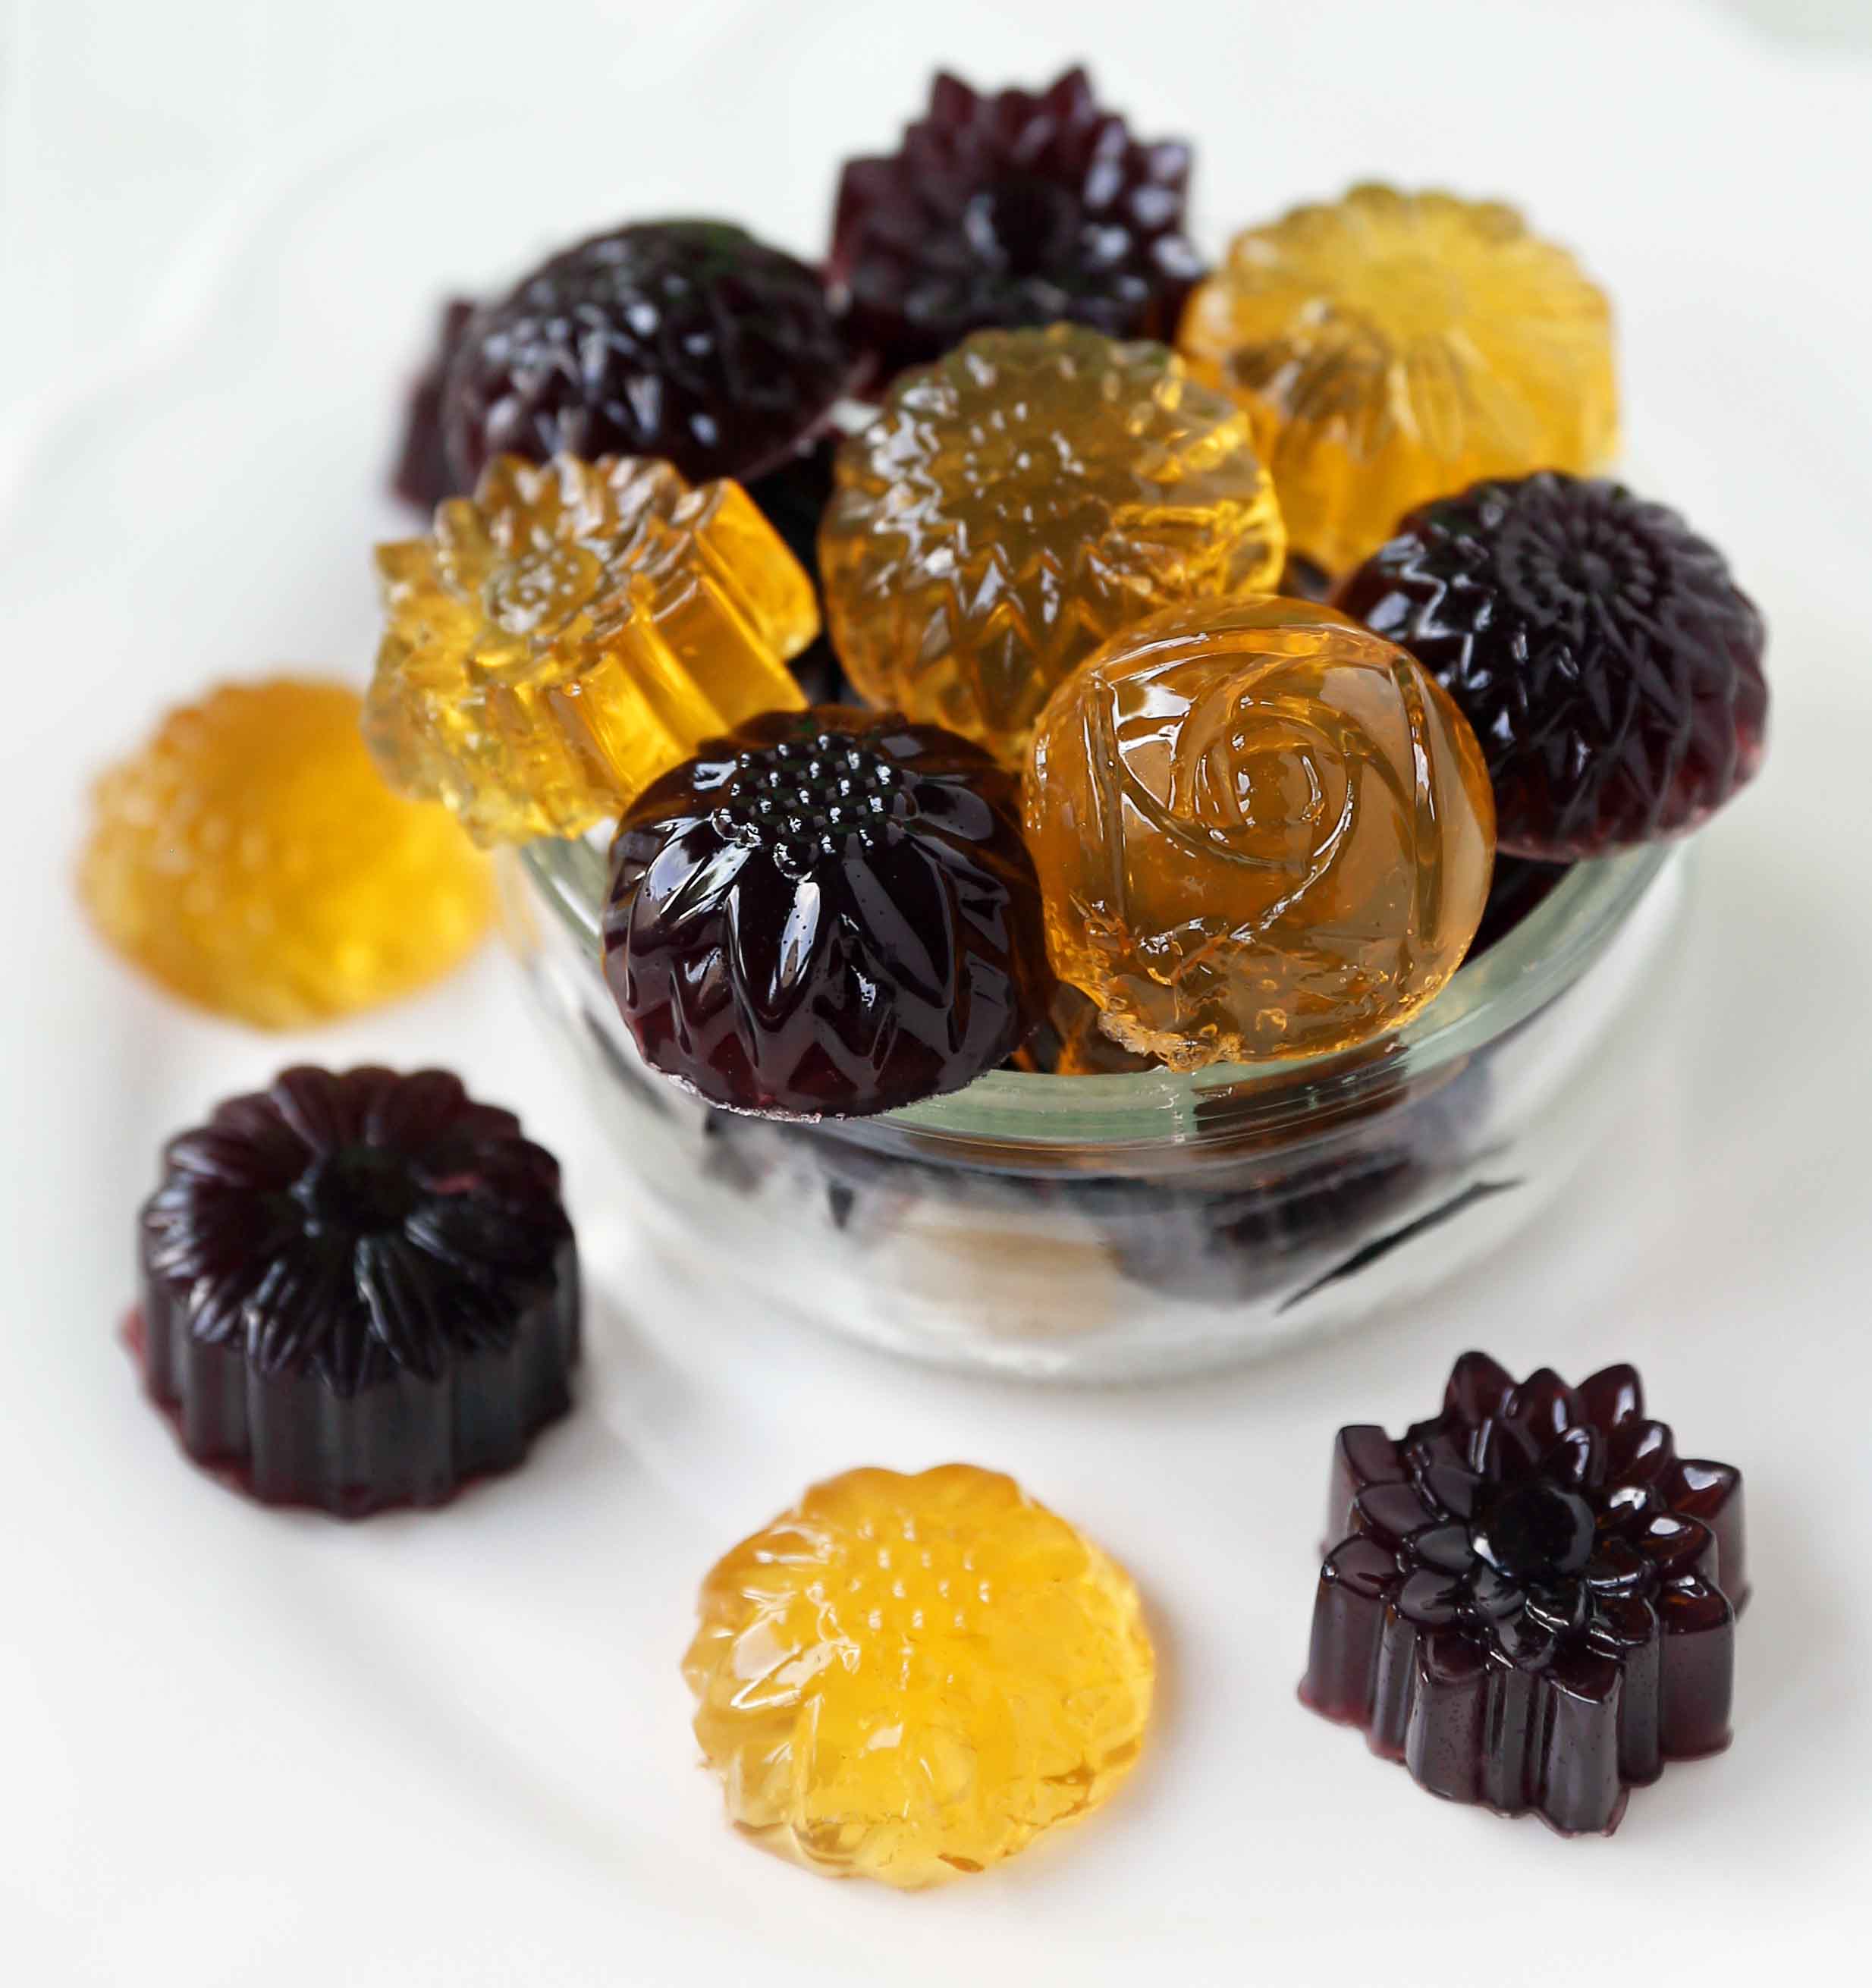 https://www.modernhoney.com/wp-content/uploads/2018/08/Homemade-Gummy-Fruit-Snacks-5.jpg